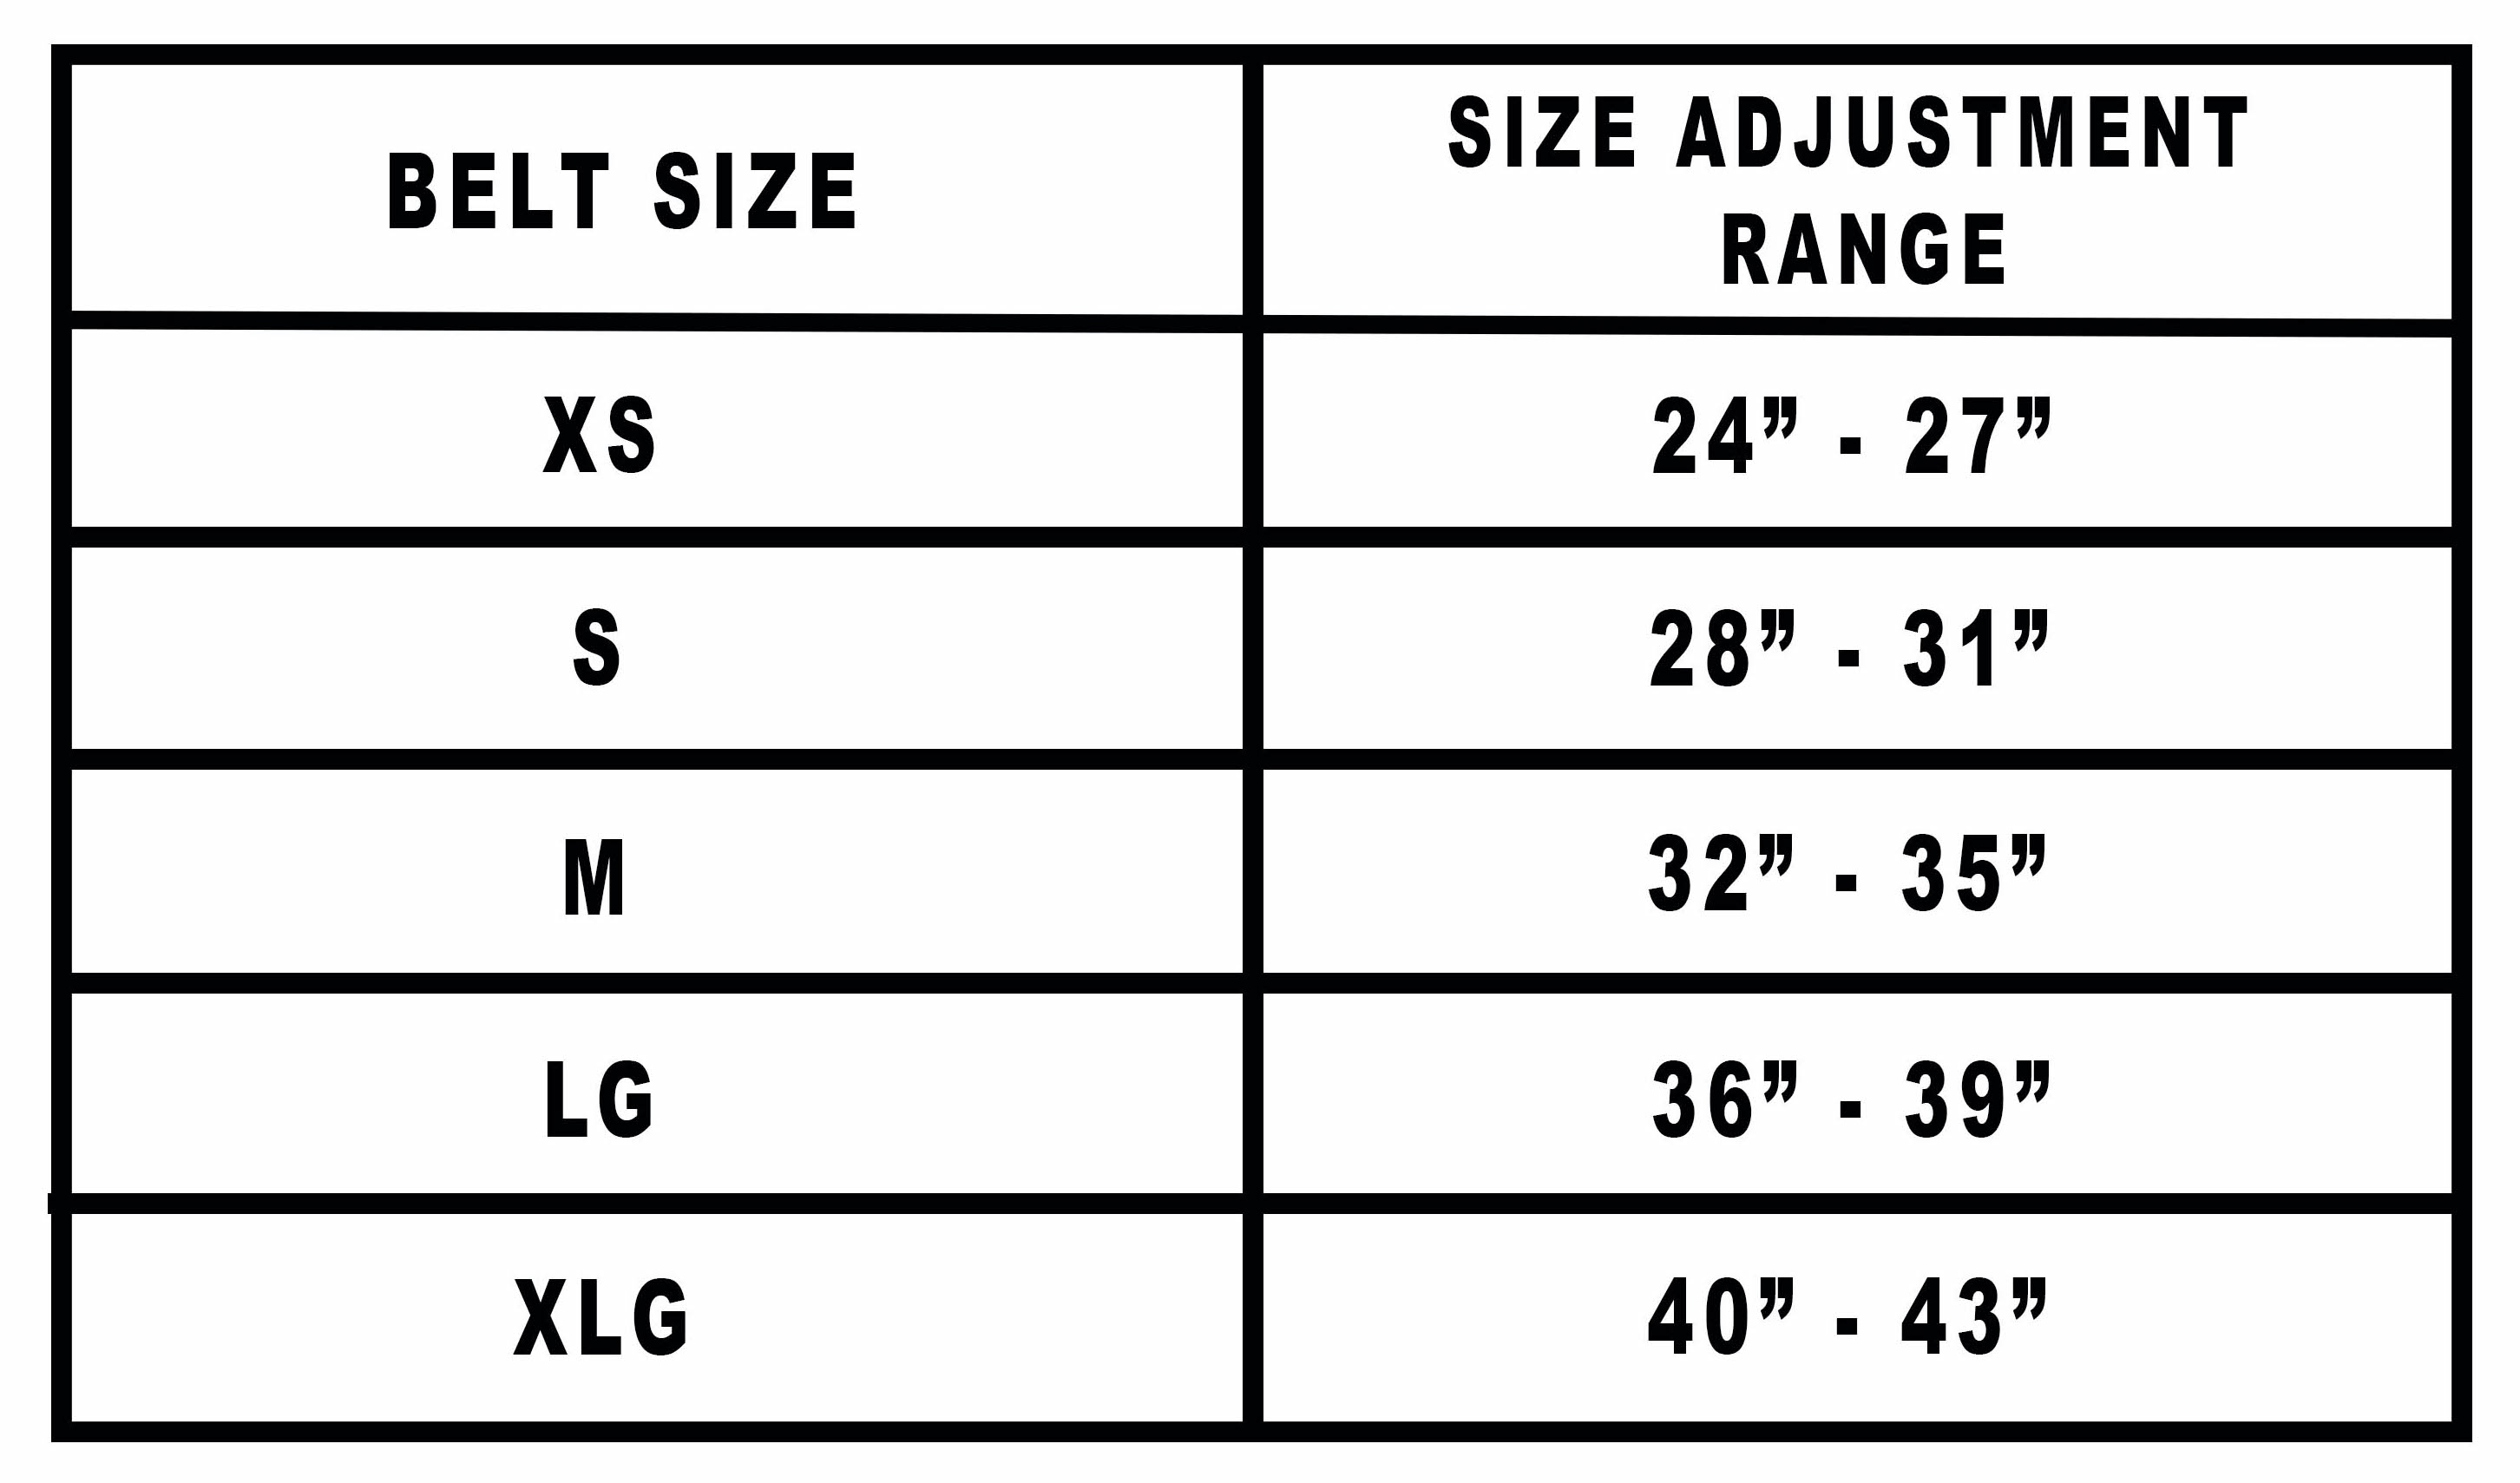 in cm womens belt size chart